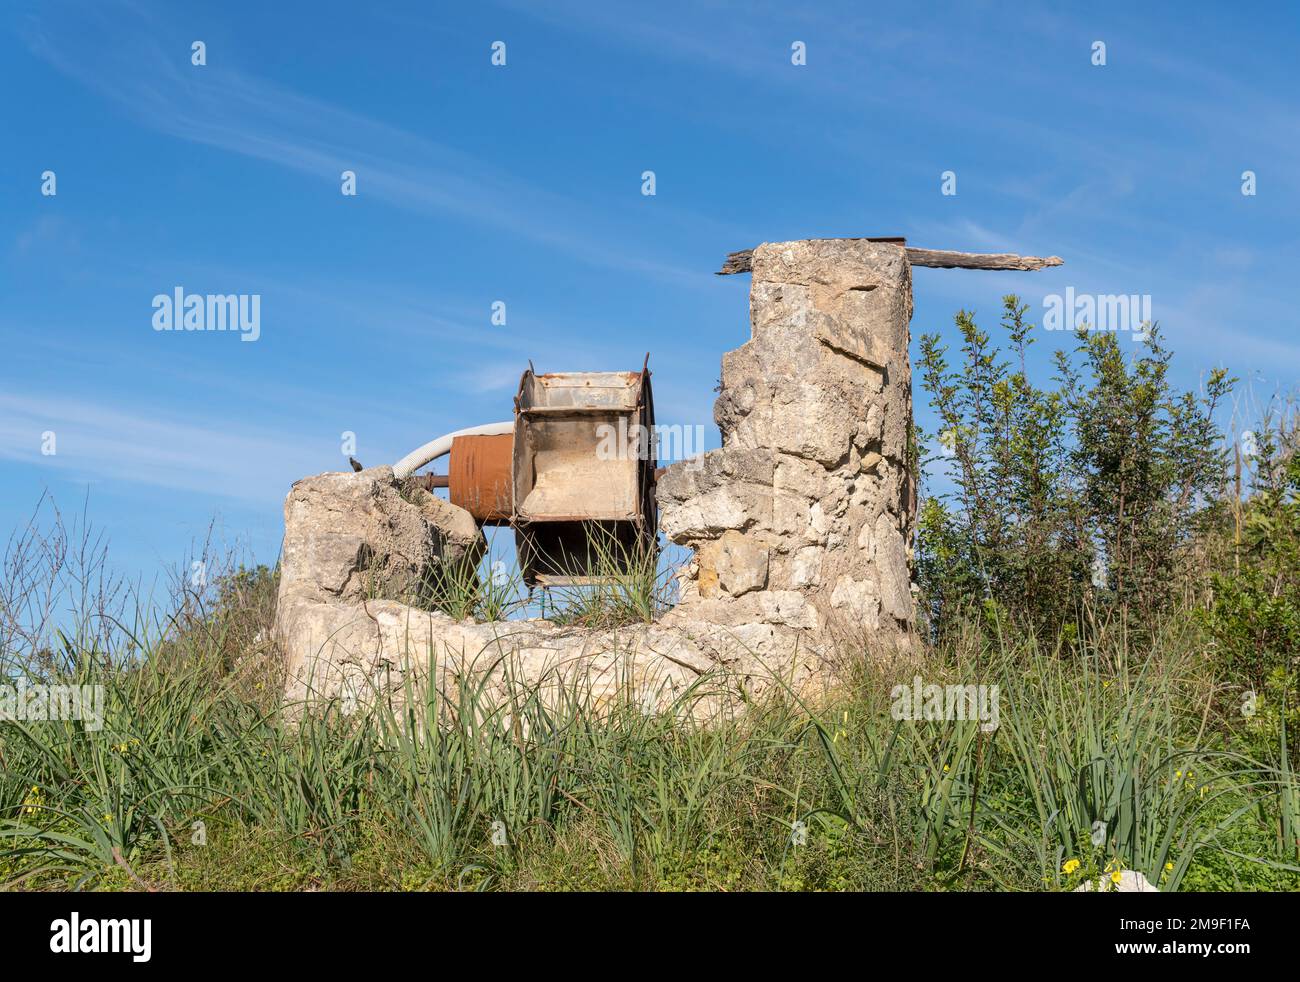 Vieux fossé d'irrigation en pierre en désuétude et dans un état ruineux. Problème de sécheresse en Espagne. Île de Majorque, Espagne Banque D'Images